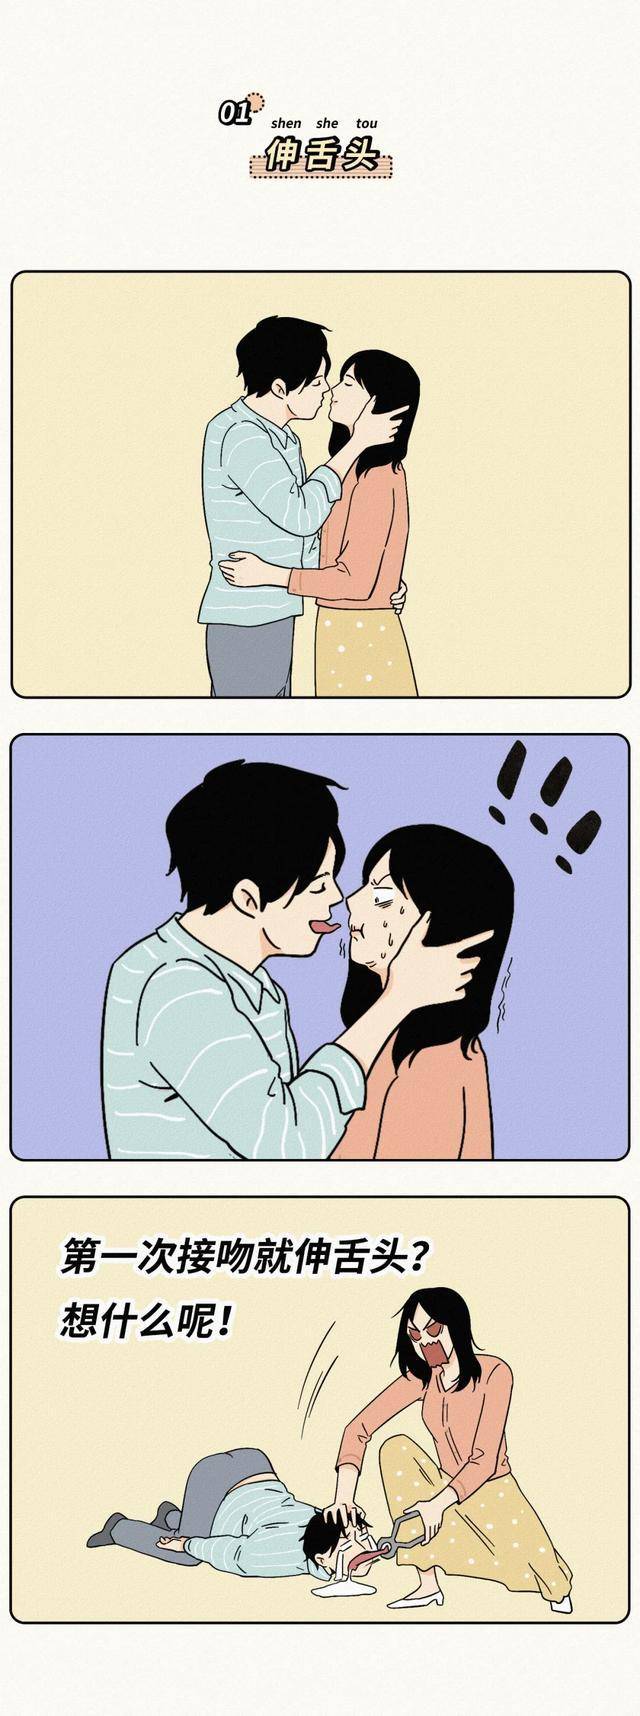 漫画:你会接吻吗?接吻要不要伸舌头?